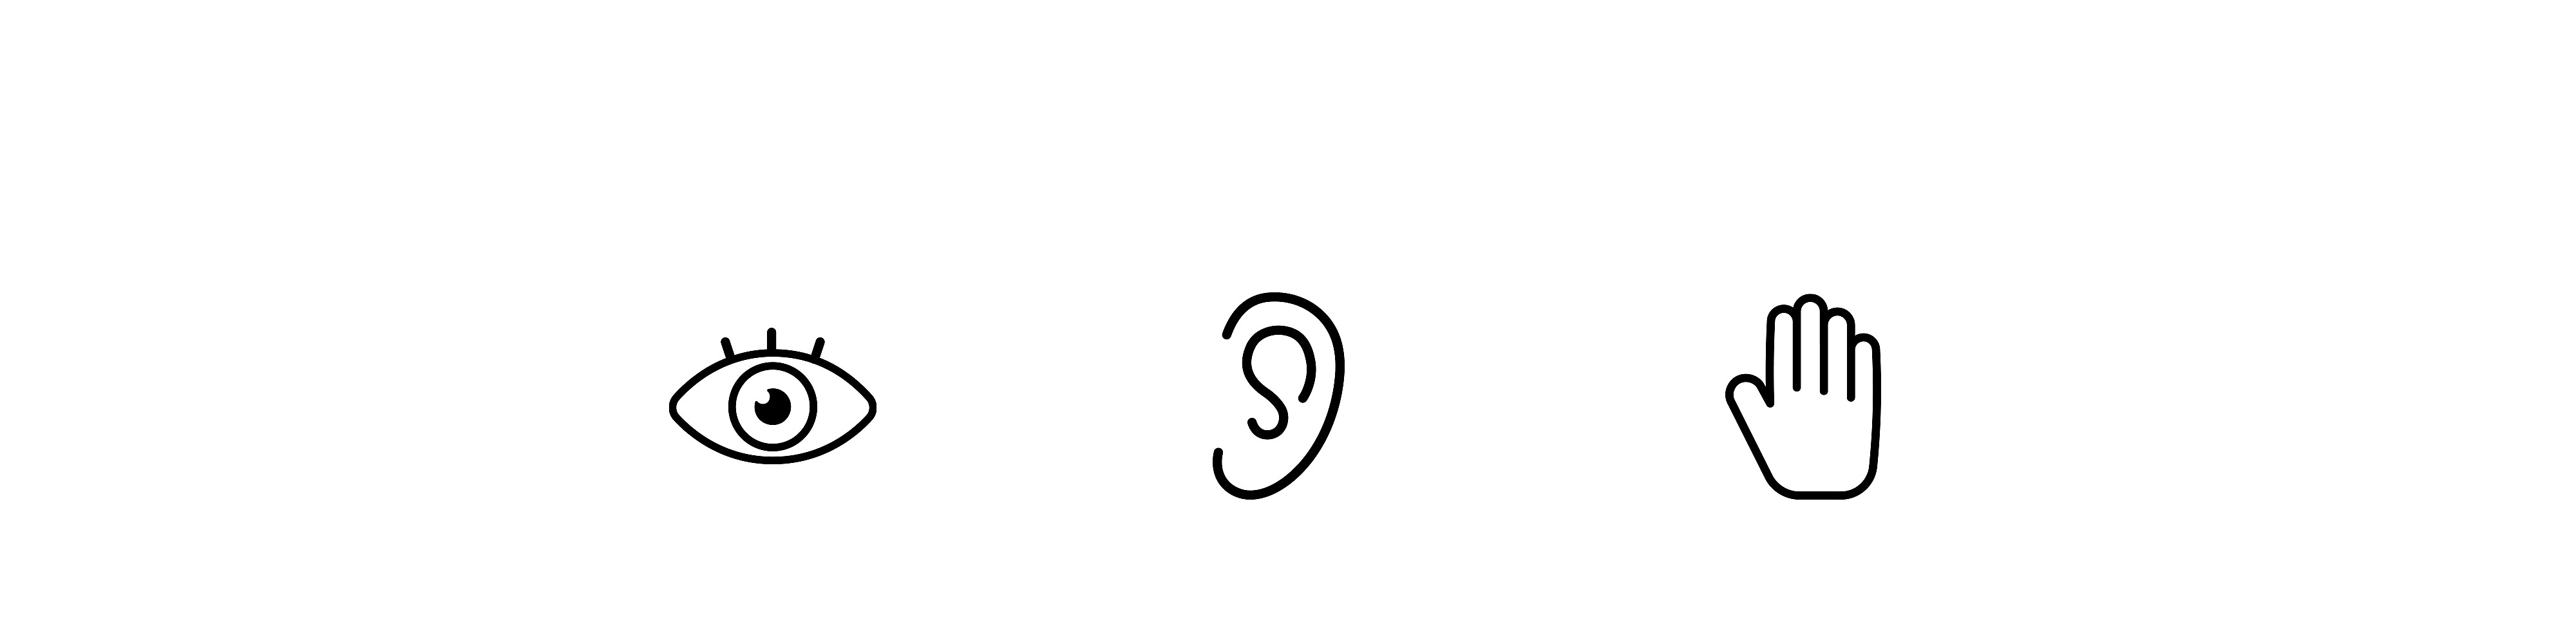 Három ikon egymás mellett, bal oldalon egy szem, középen egy fül, jobb oldalon pedig egy kéz